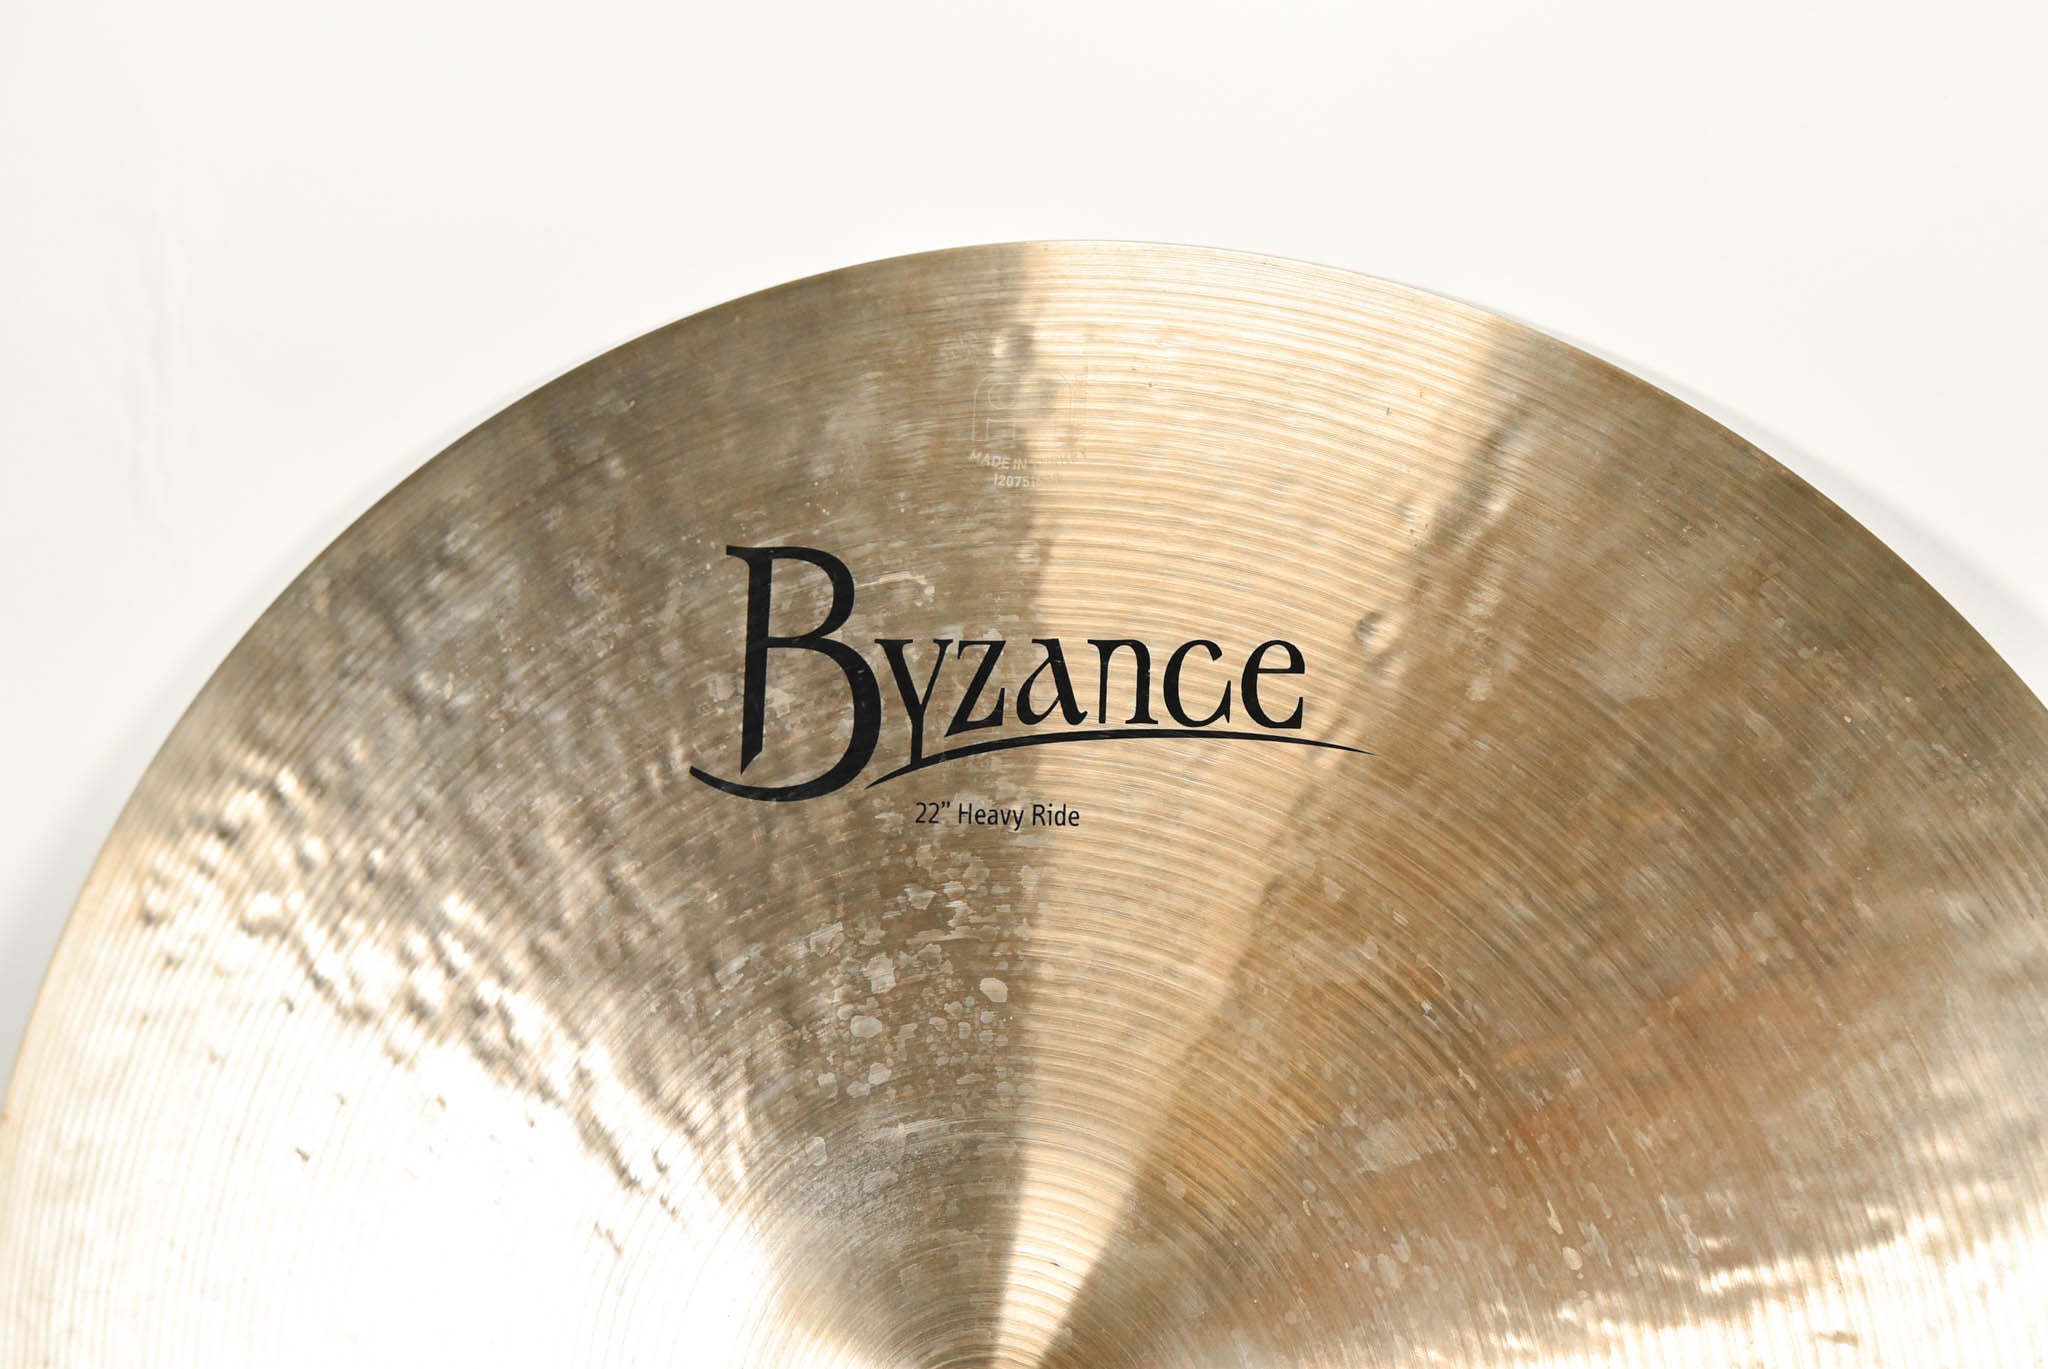 Meinl Byzance 22" Heavy Ride Cymbal